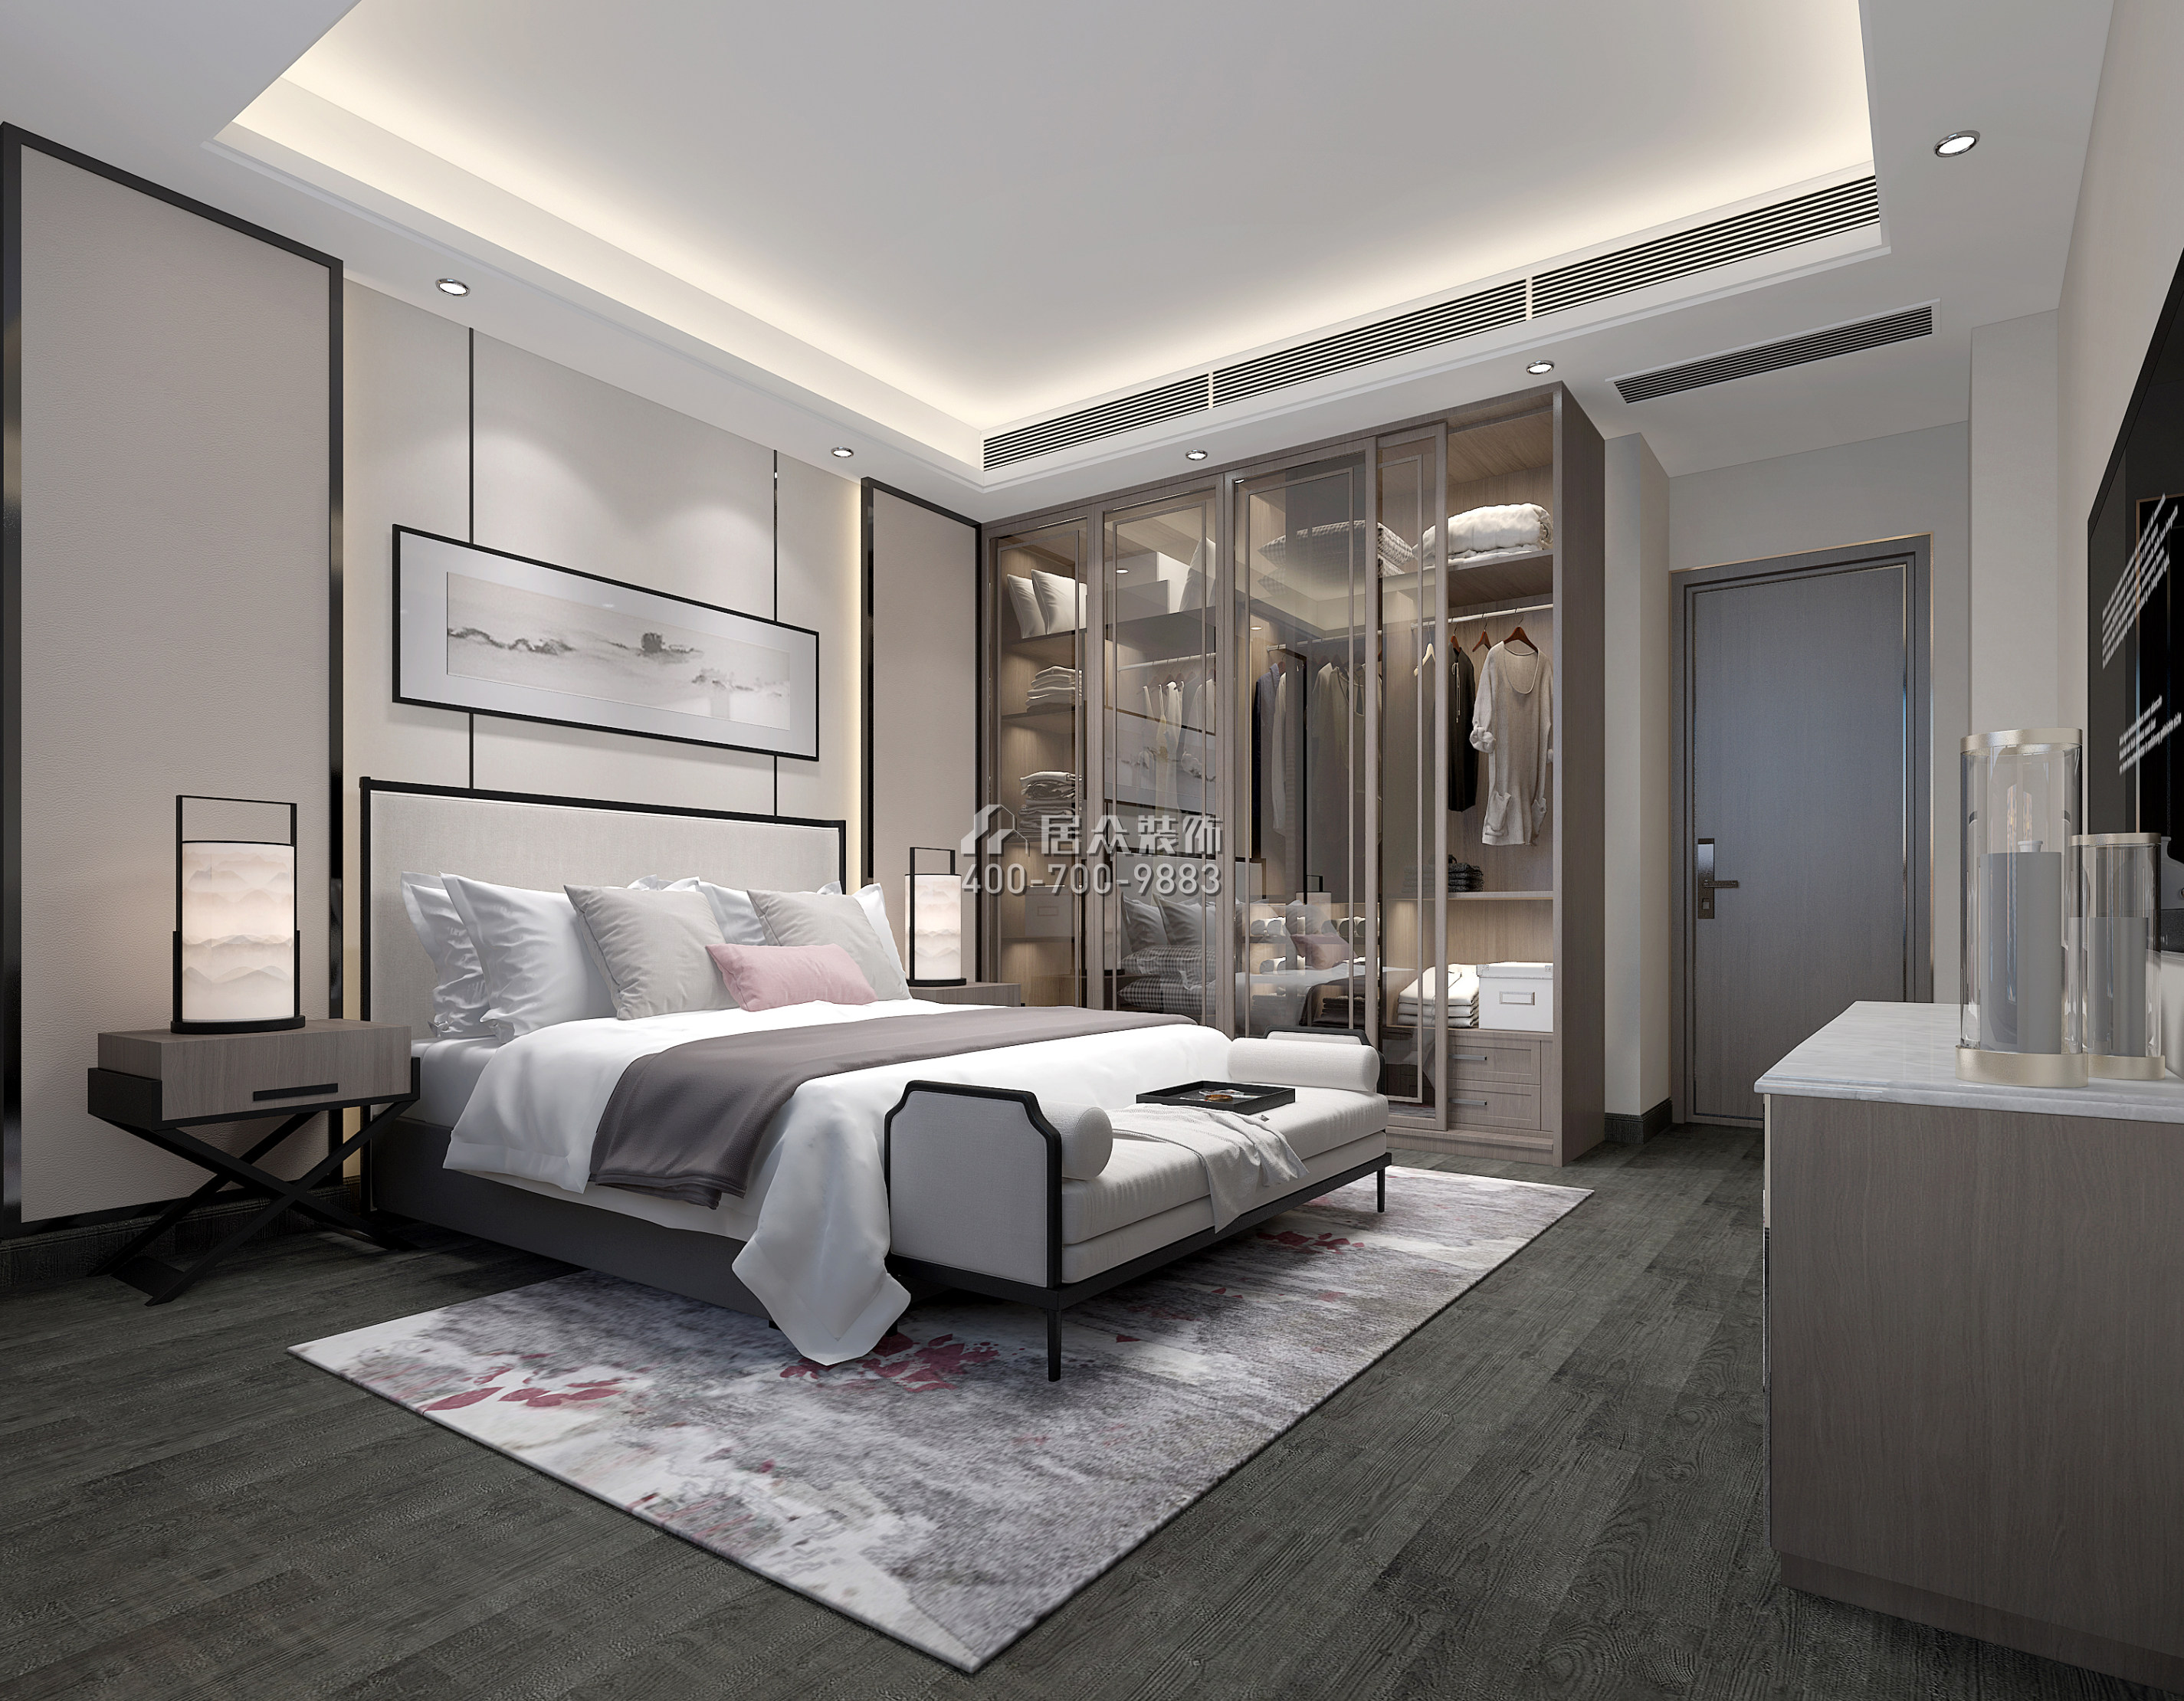 星河丹堤242平方米現代簡約風格復式戶型臥室裝修效果圖